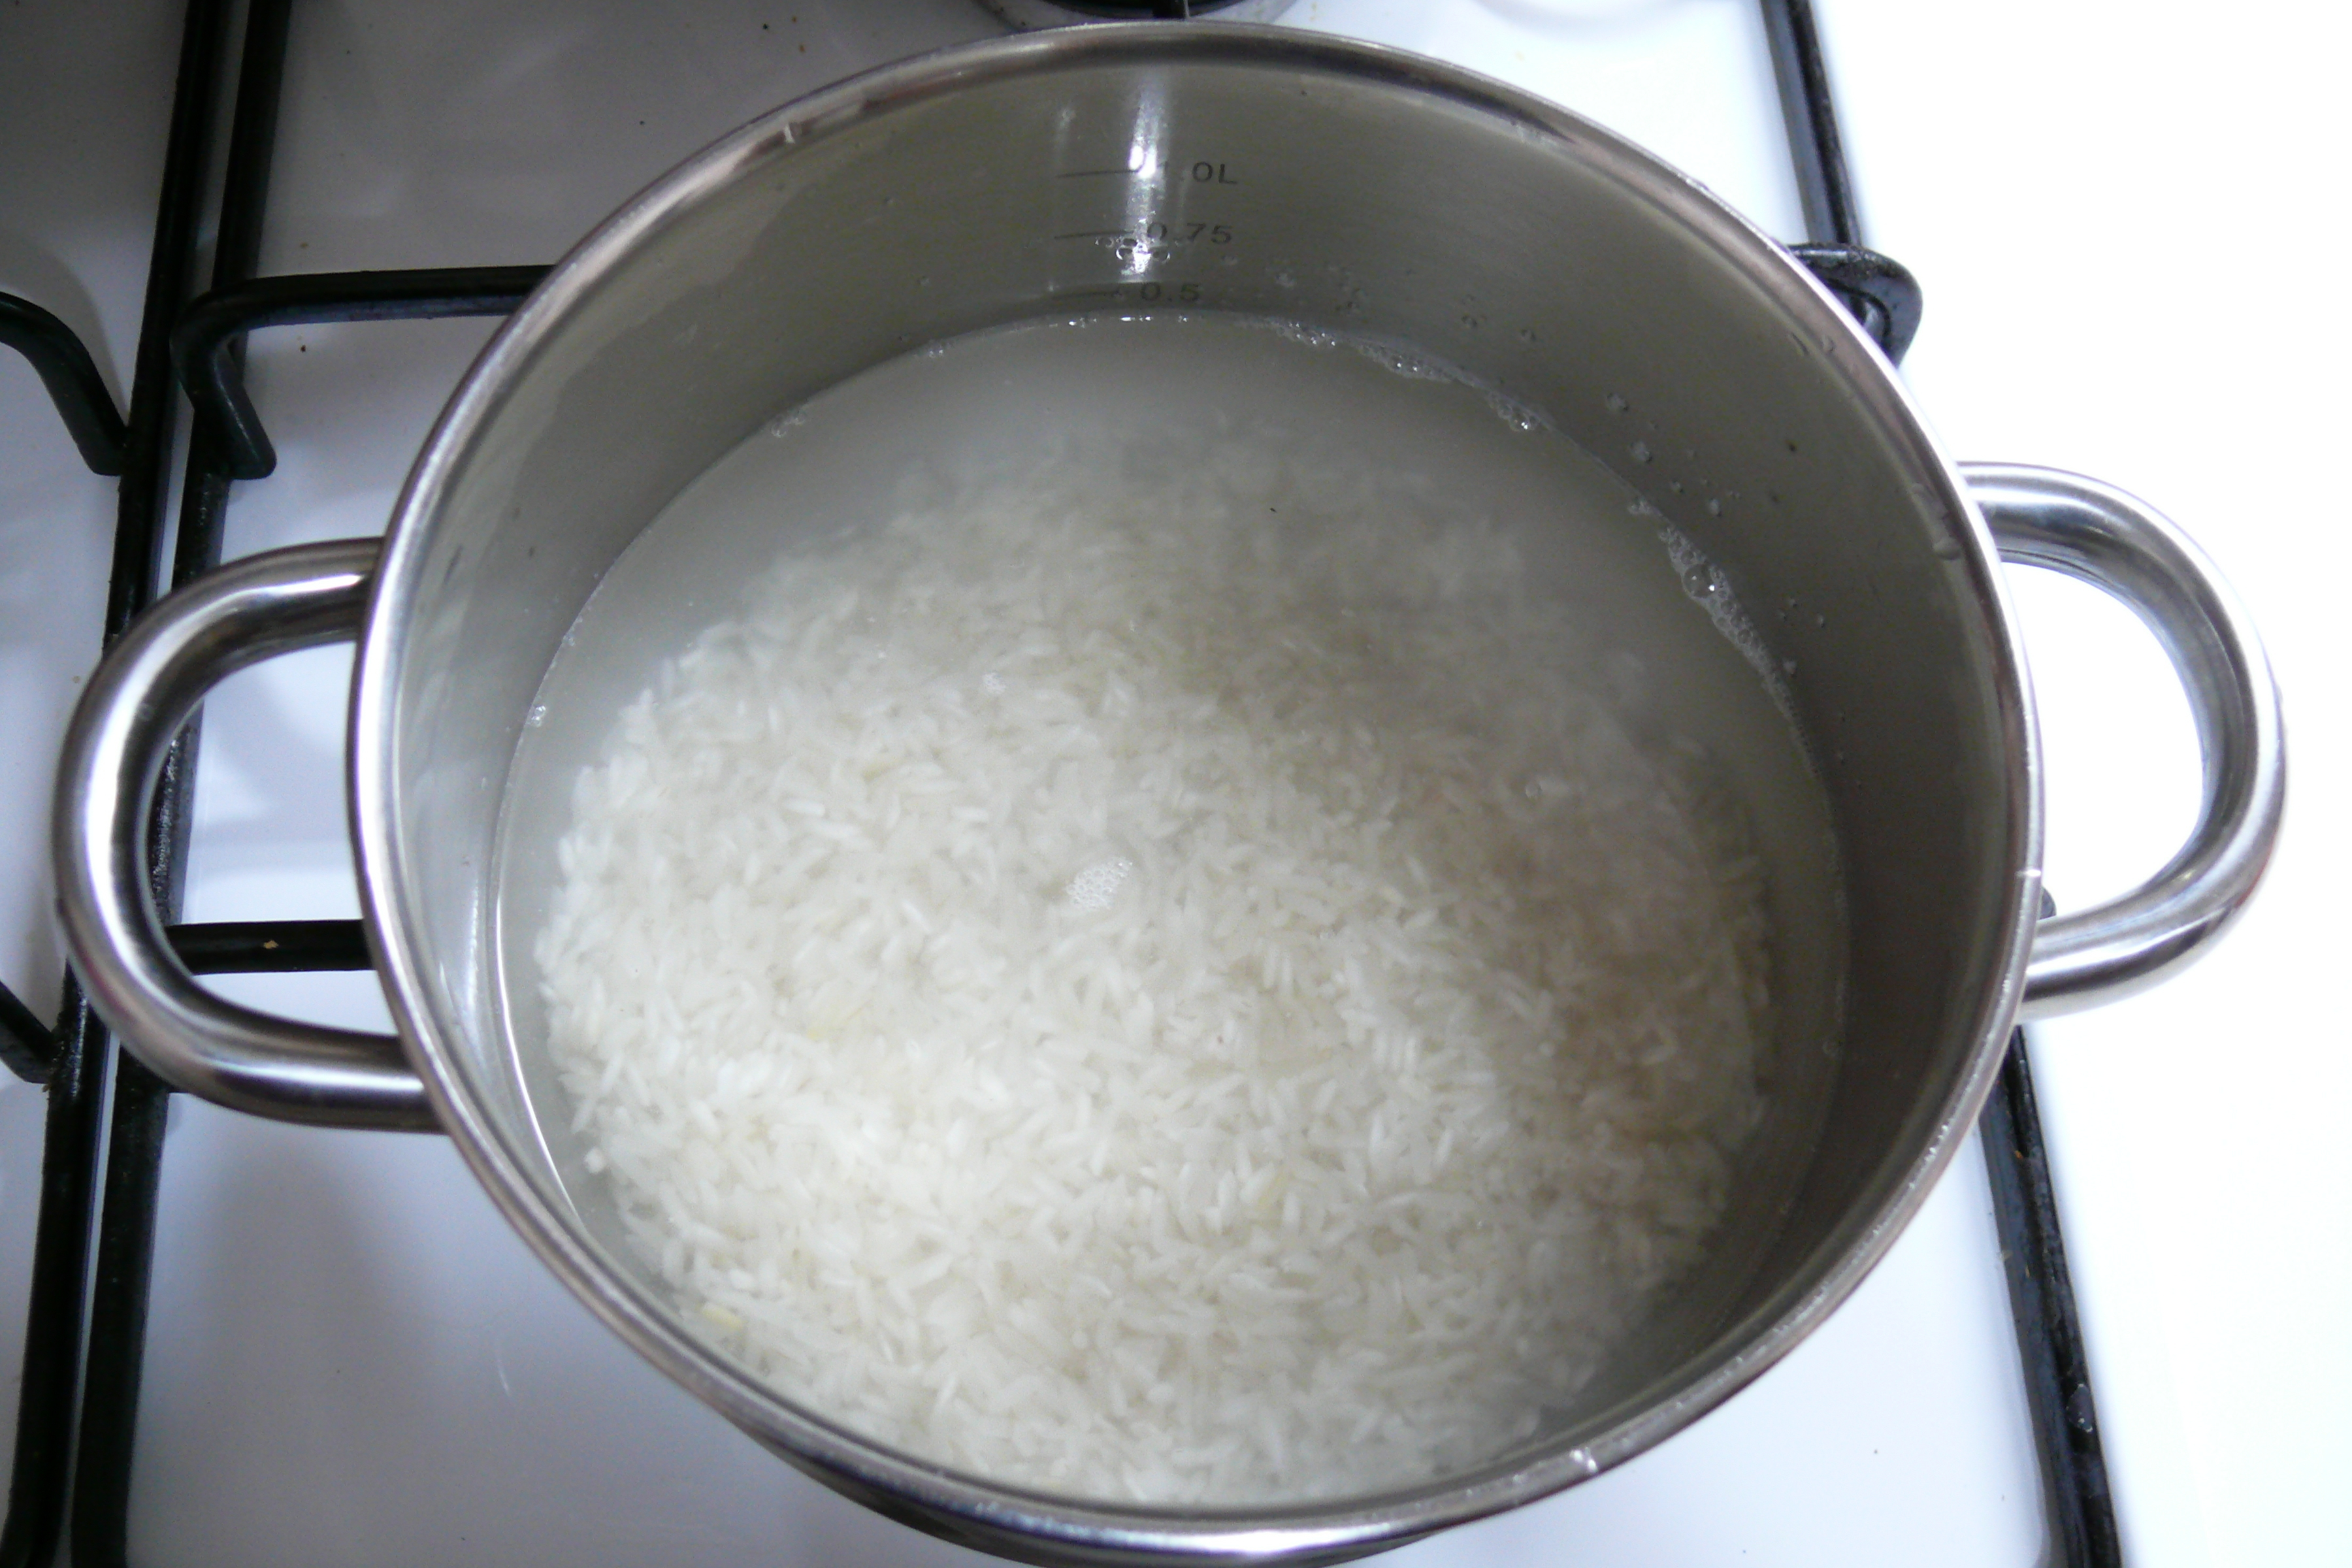 Рис в кастрюле. Отварить рис. Рис варится в кастрюле. Вареный рис в кастрюле. Какой водой заливают рис холодной или горячей